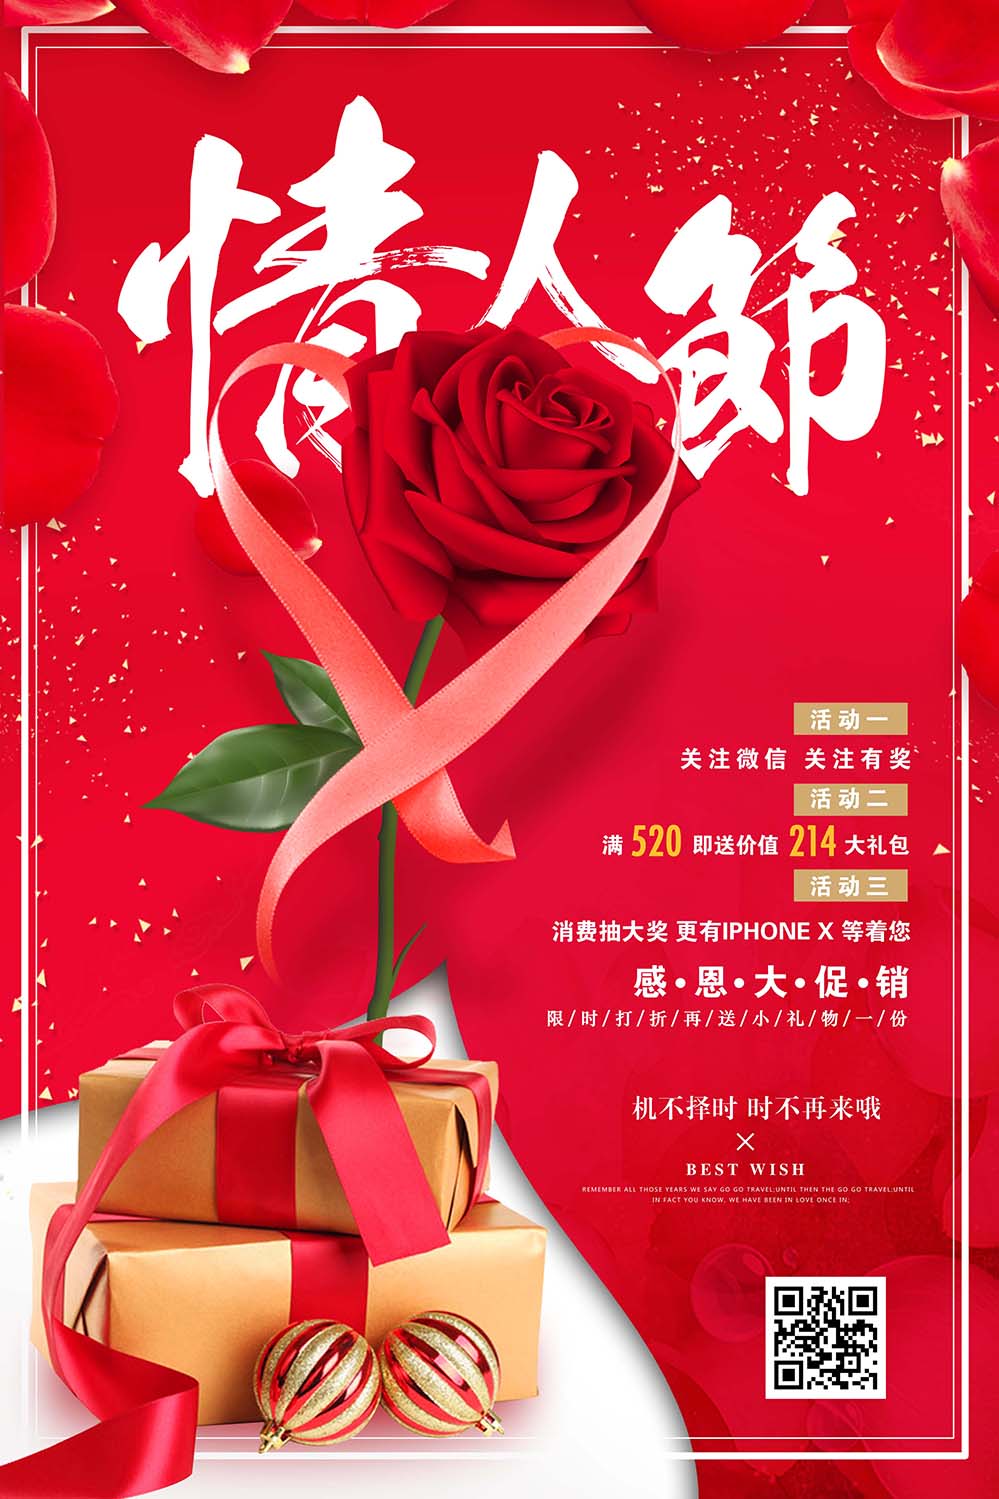 情人节关注微信送玫瑰花礼物活动海报设计PSD源文件